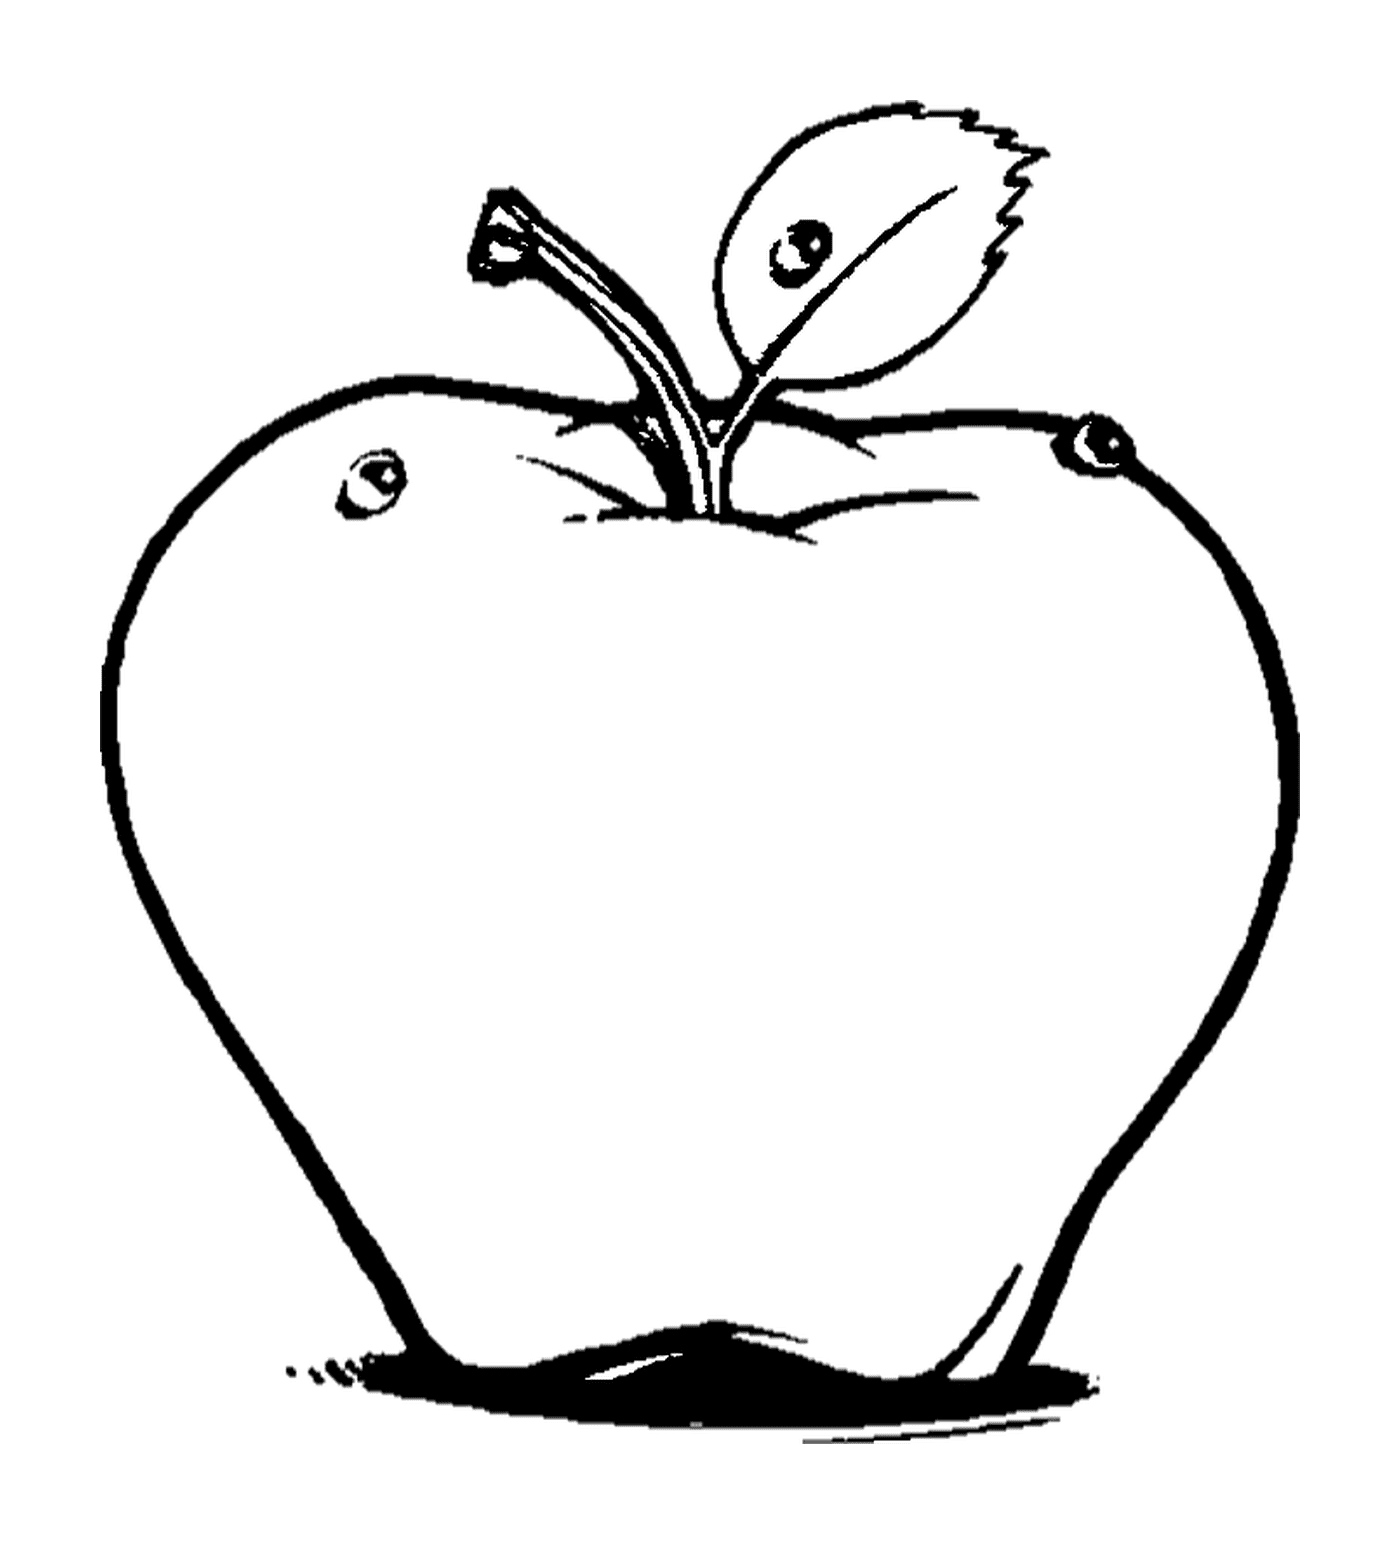  apple drawn 